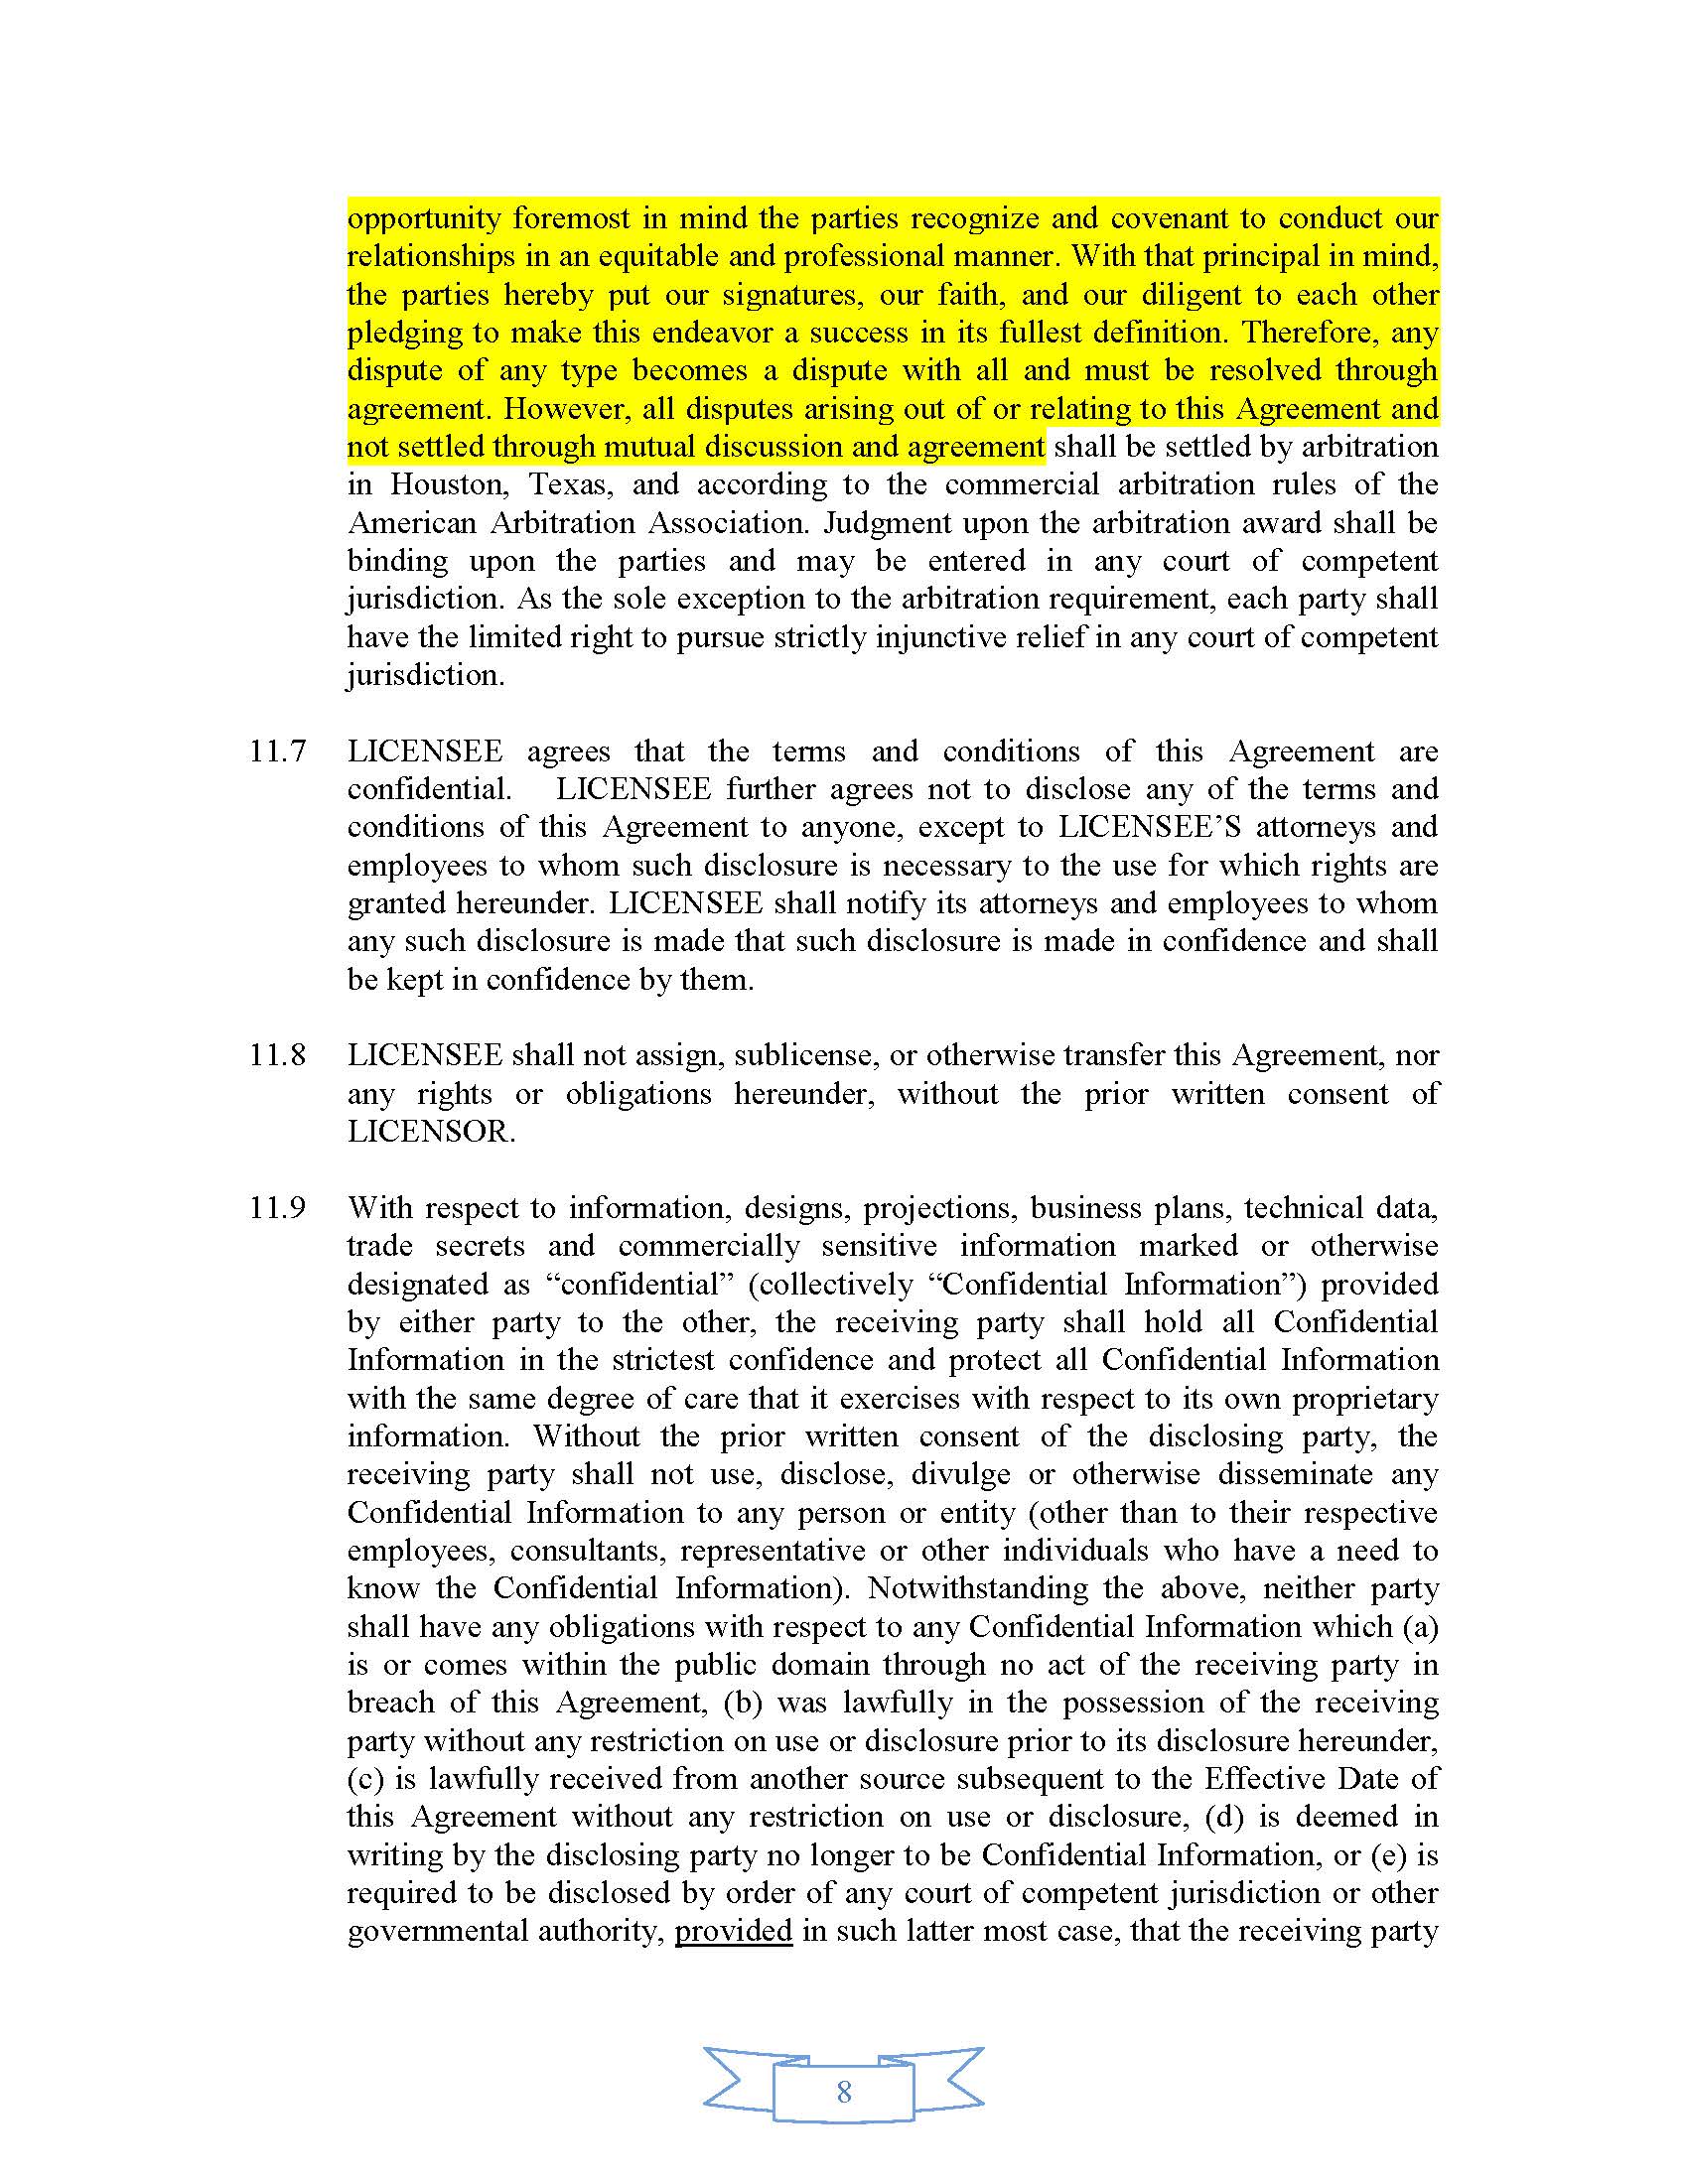 NSI - Summers NutraPharmx License Agreement v5 0-FINAL-111717 KEN_Page_8.jpg